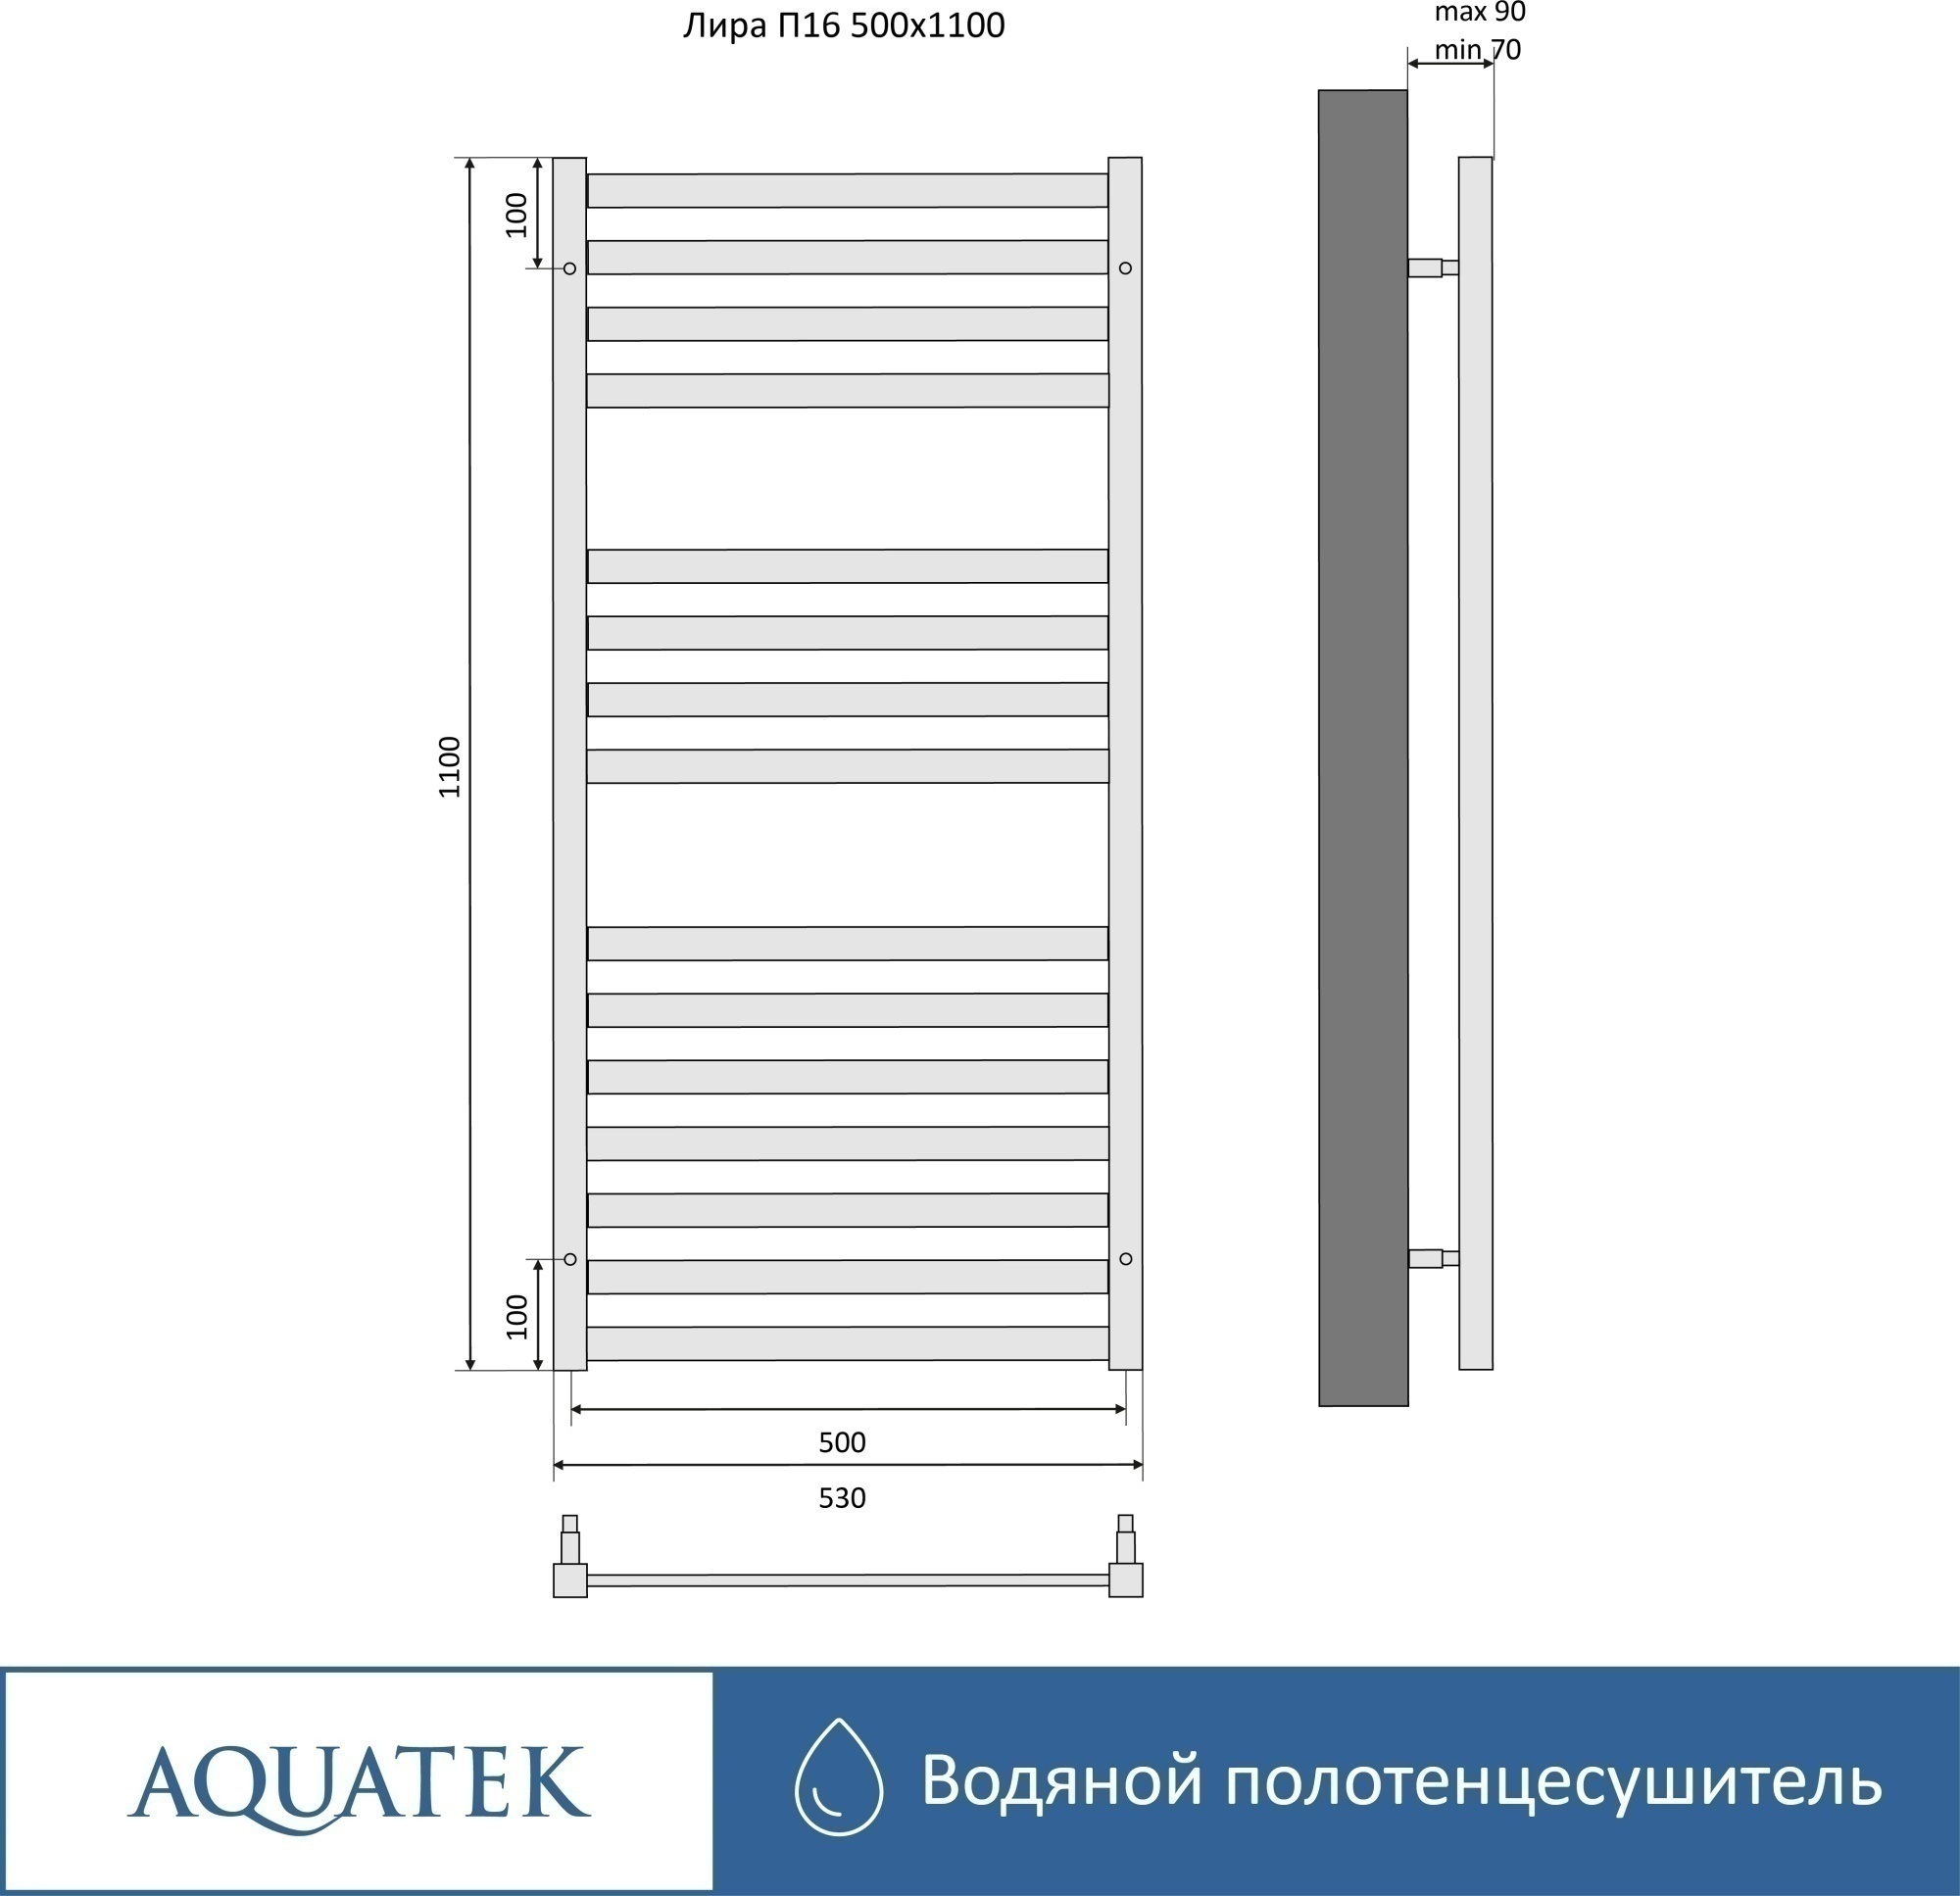 Полотенцесушитель водяной Aquatek Лира П16 50x110 AQ KP1610BL